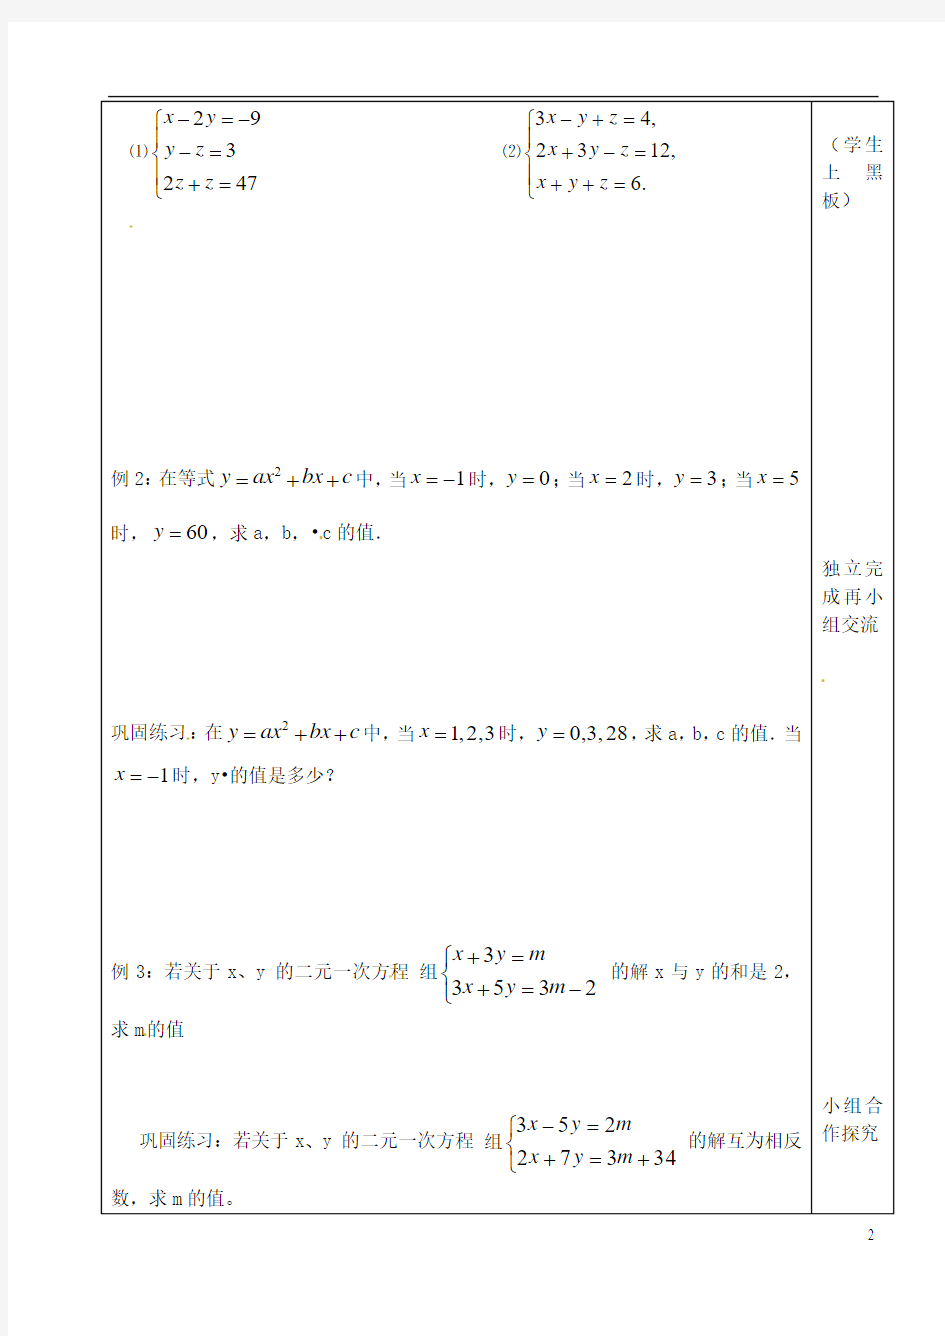 江苏省苏州张家港市一中七年级数学下册 10.3 三元一次方程组学案